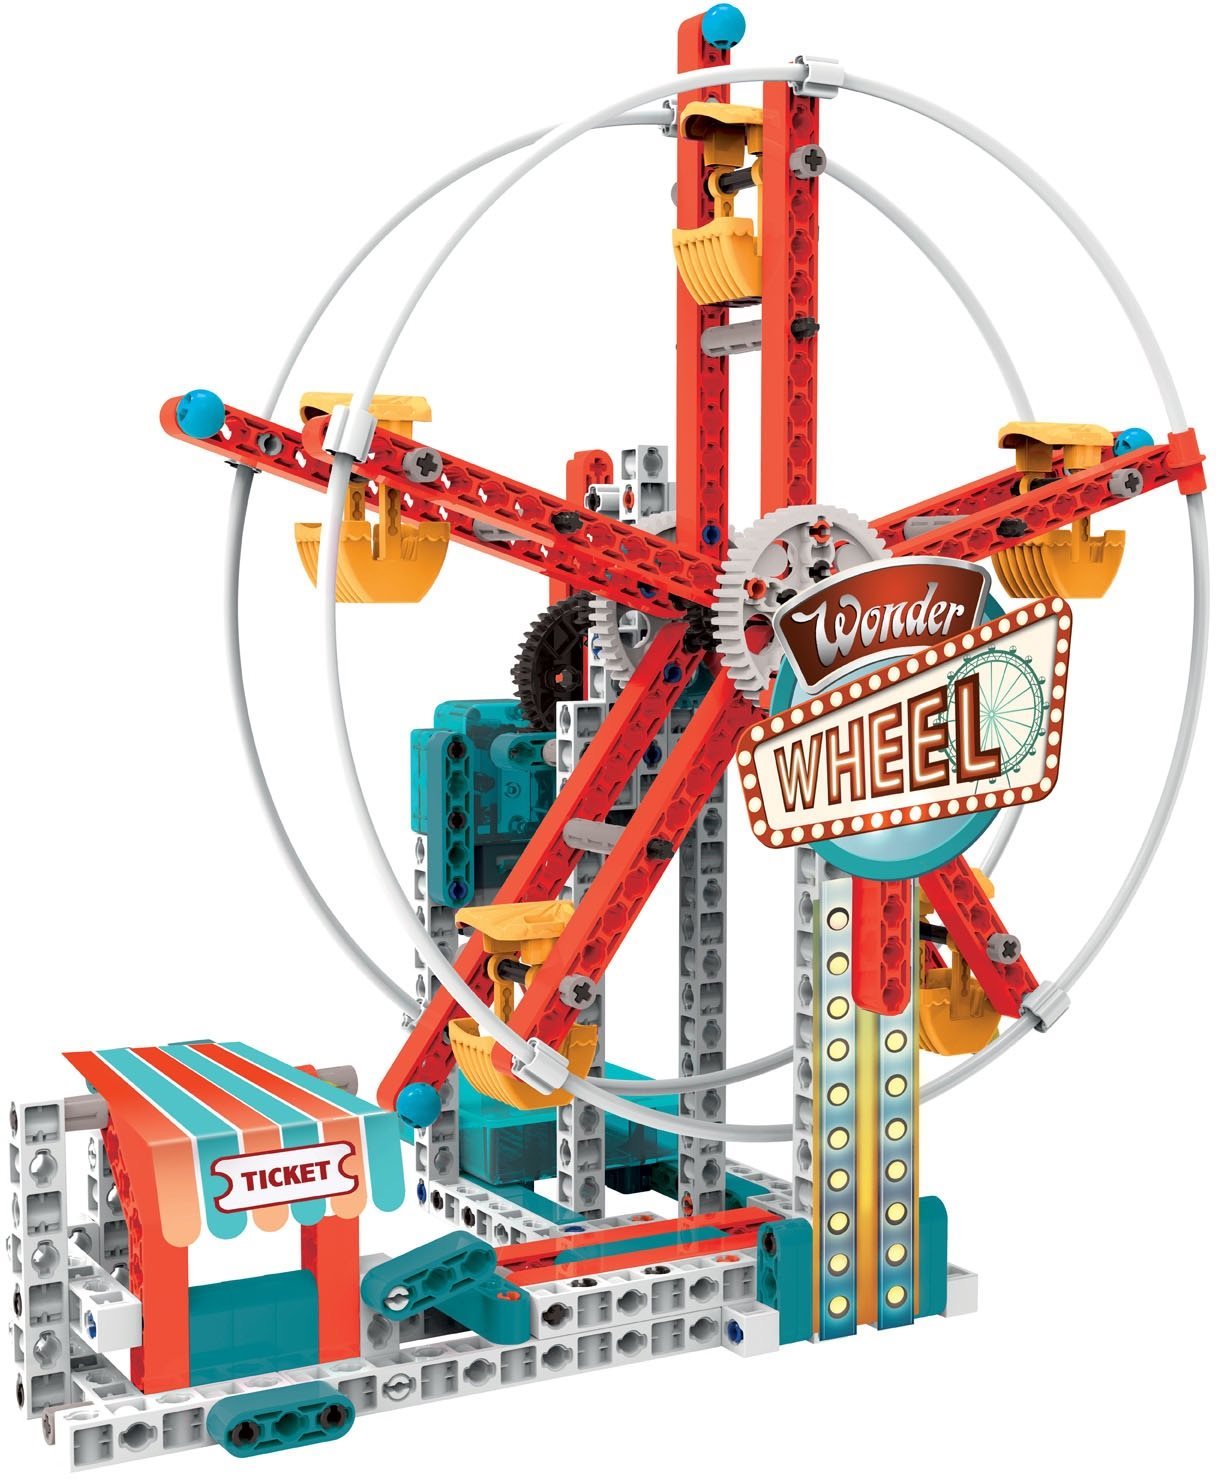 Building Set Mechanics - Amusement Park Lateral view